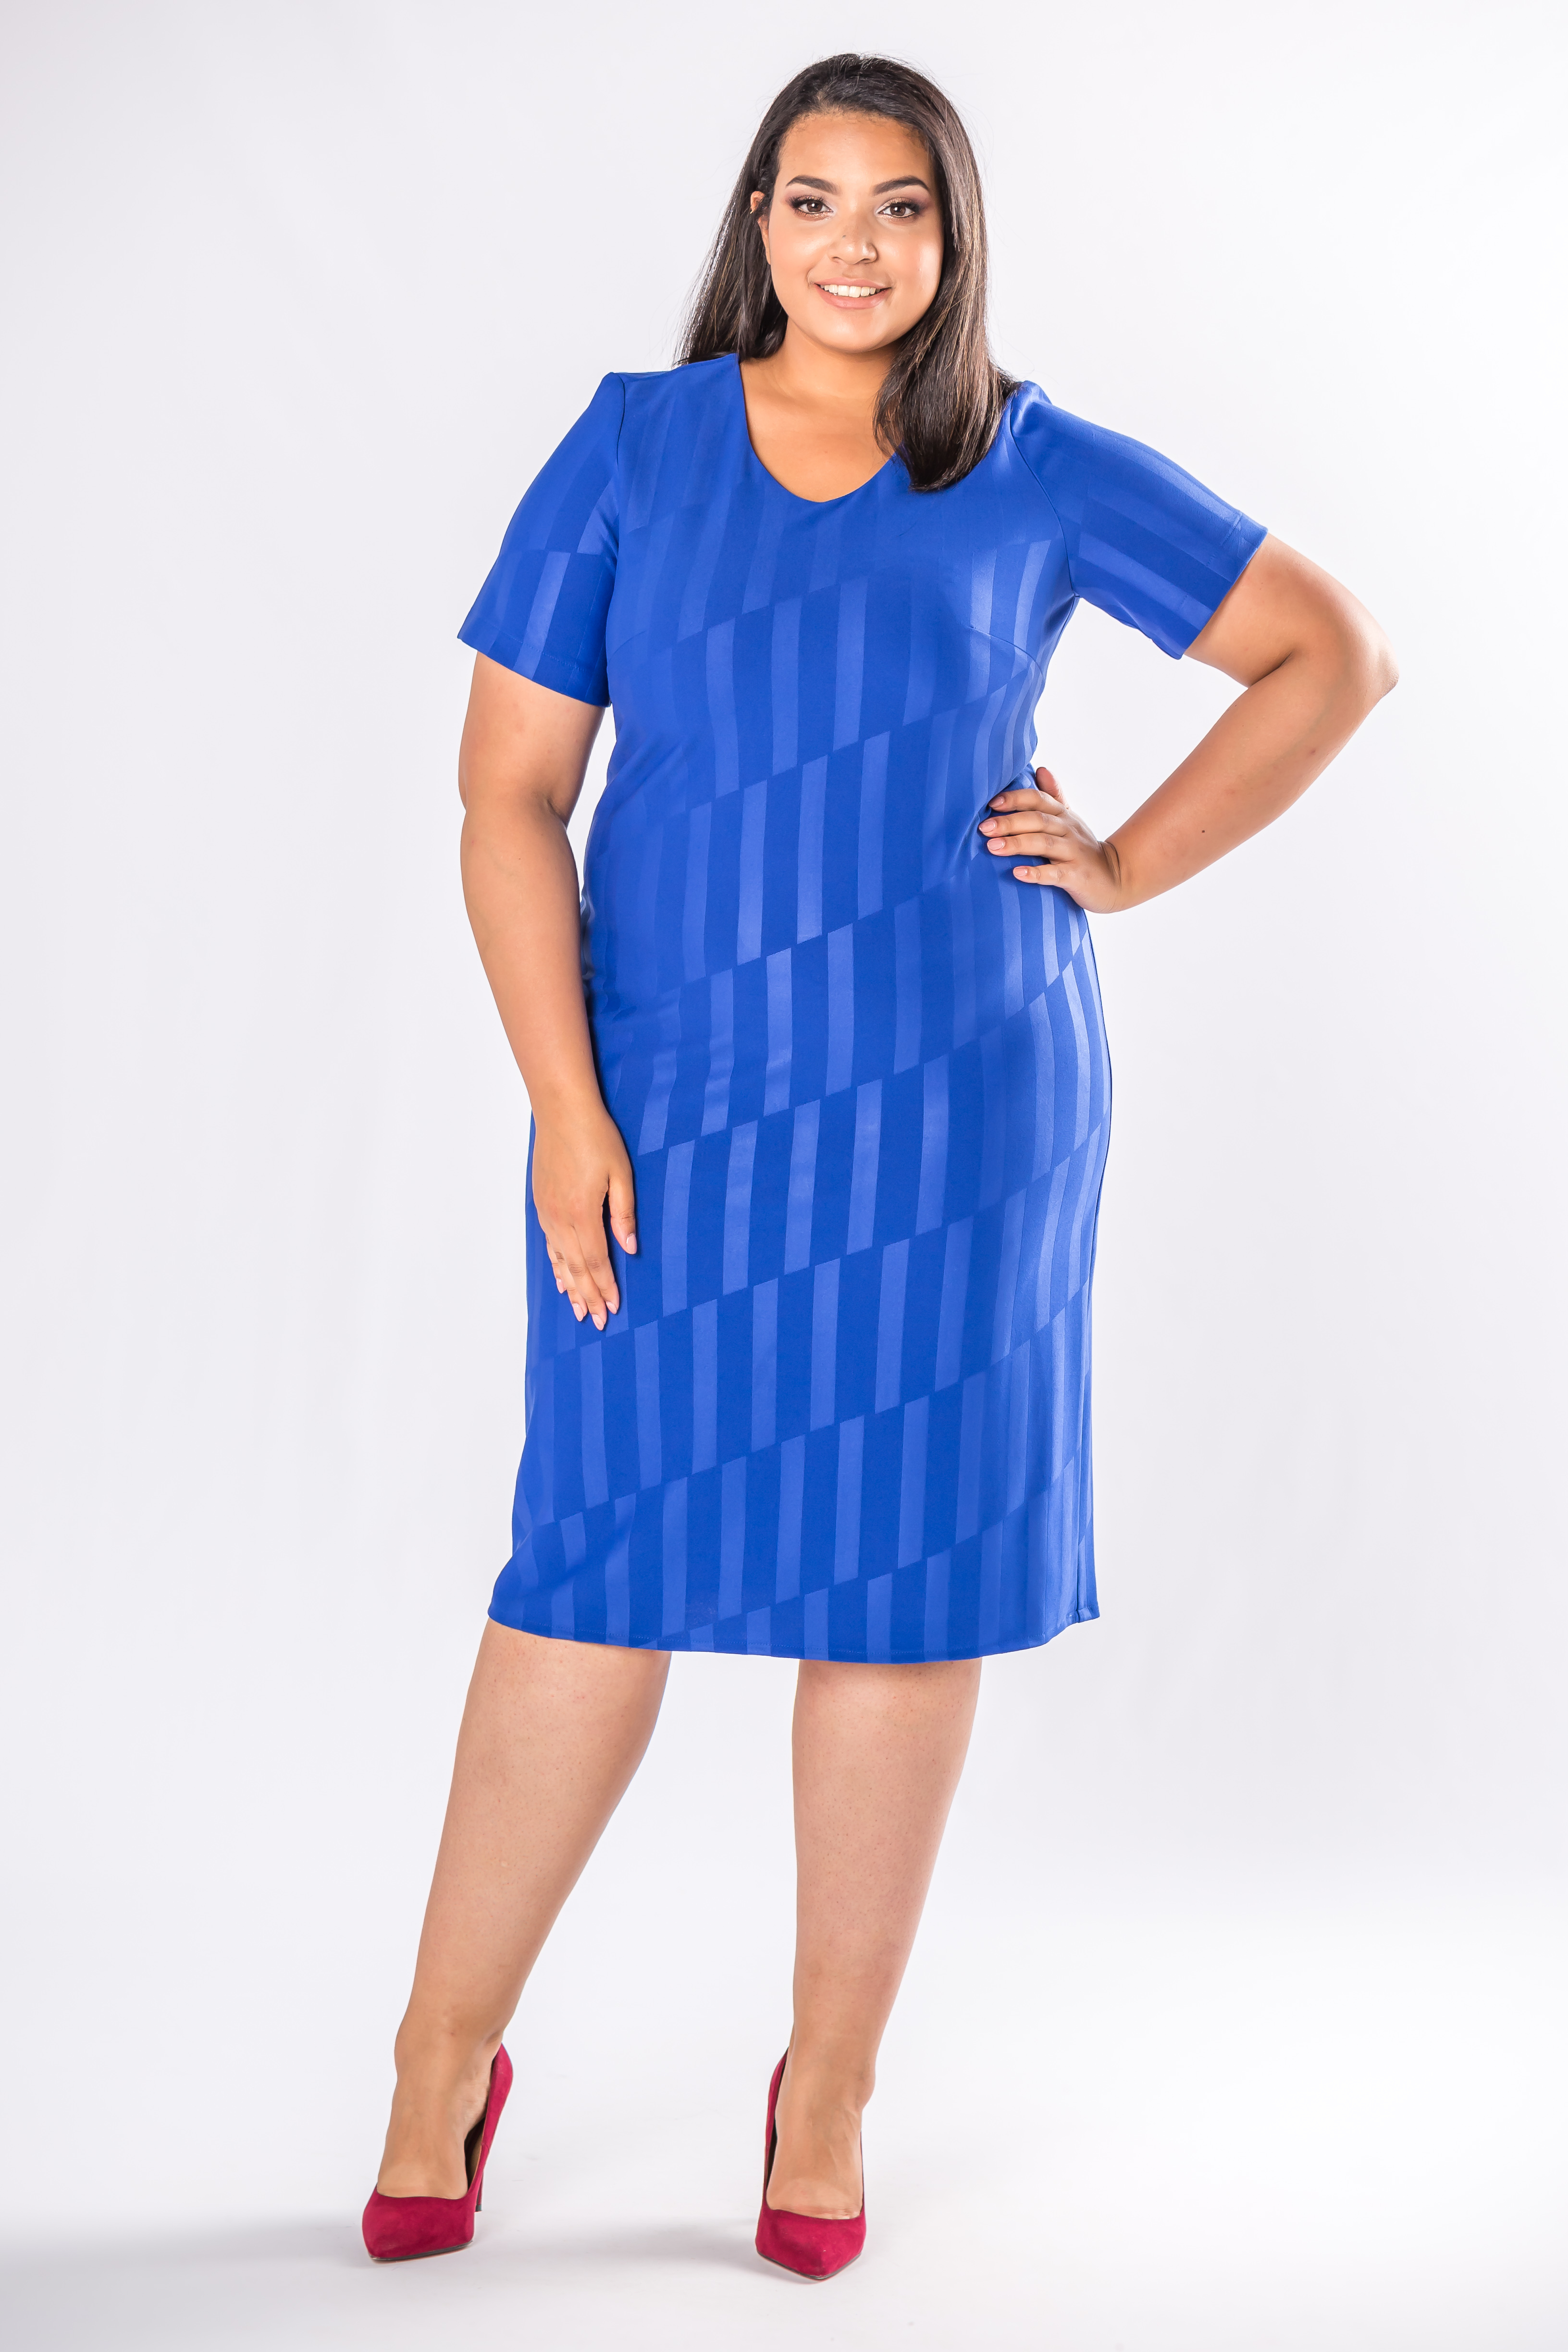 Puzdrové šaty modrej farby so vzorom